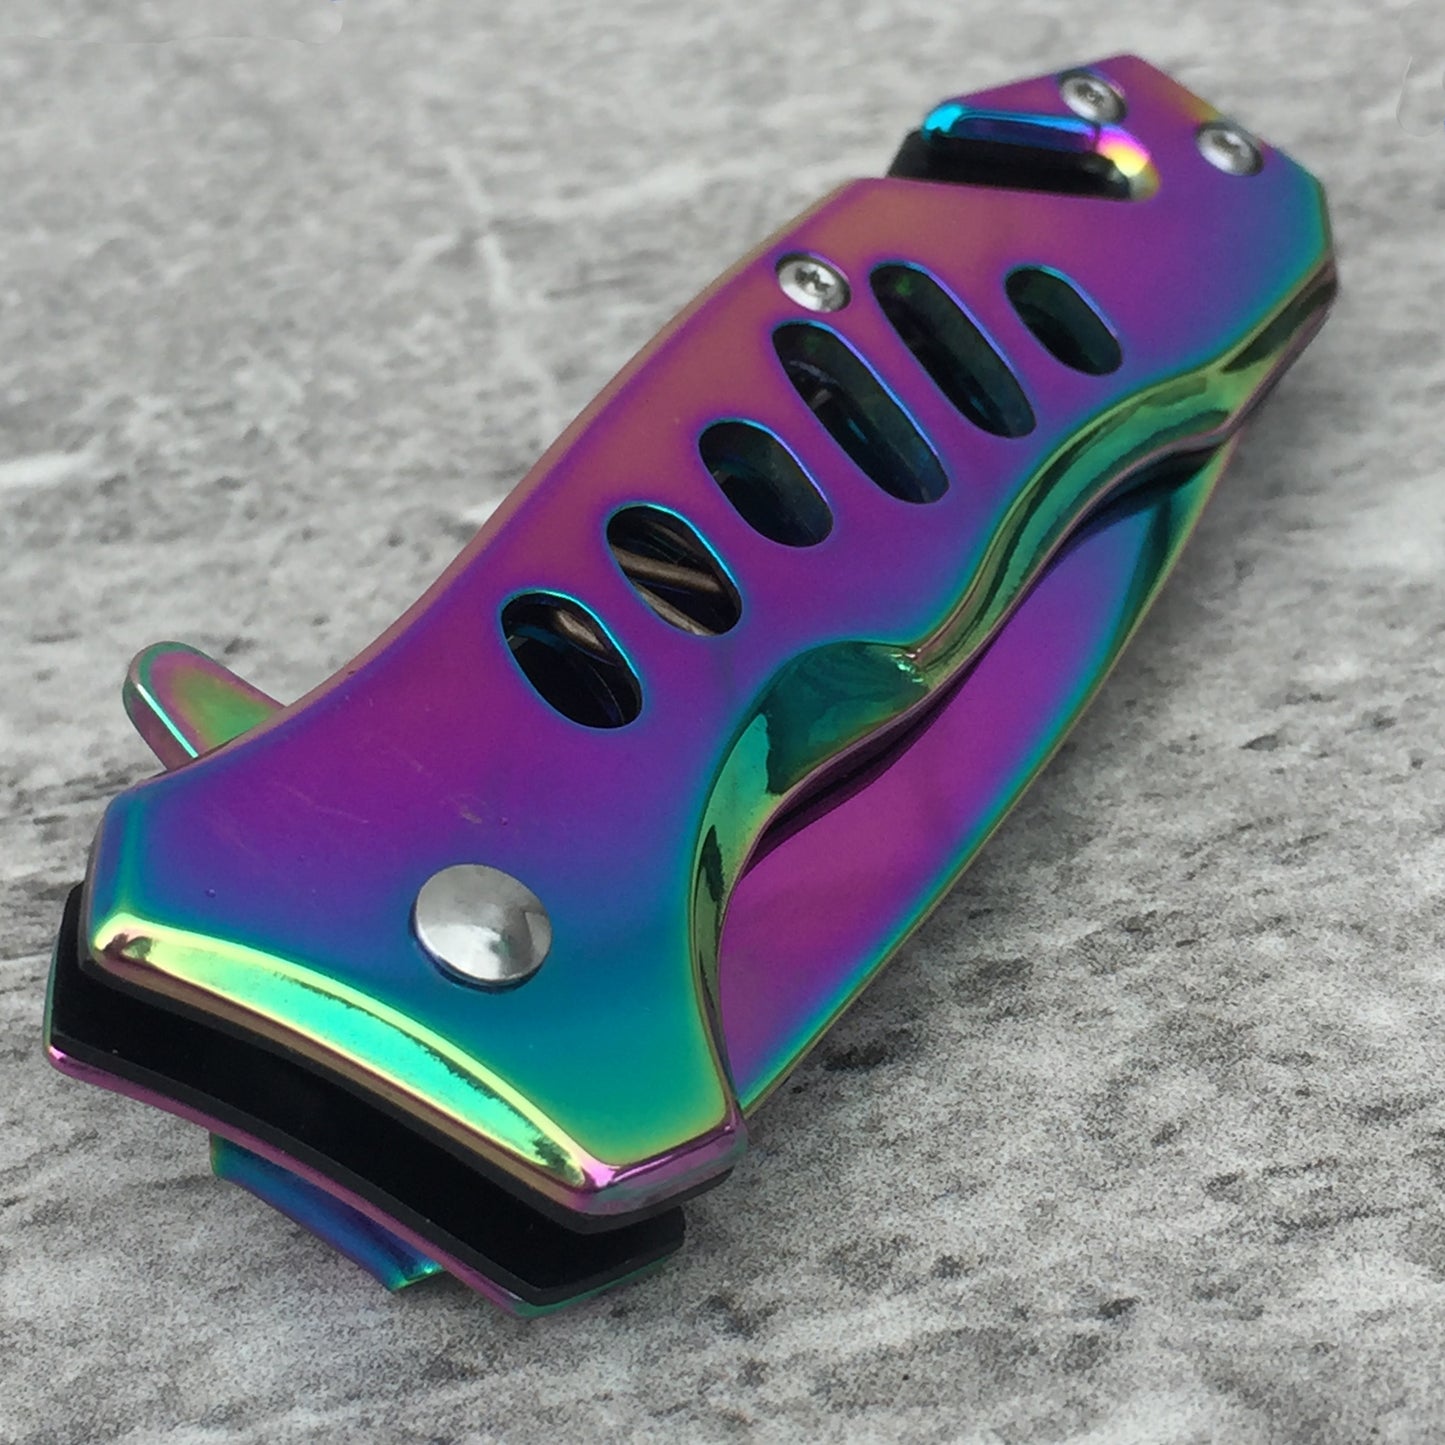 Falcon 6" Rainbow Pocket Knife